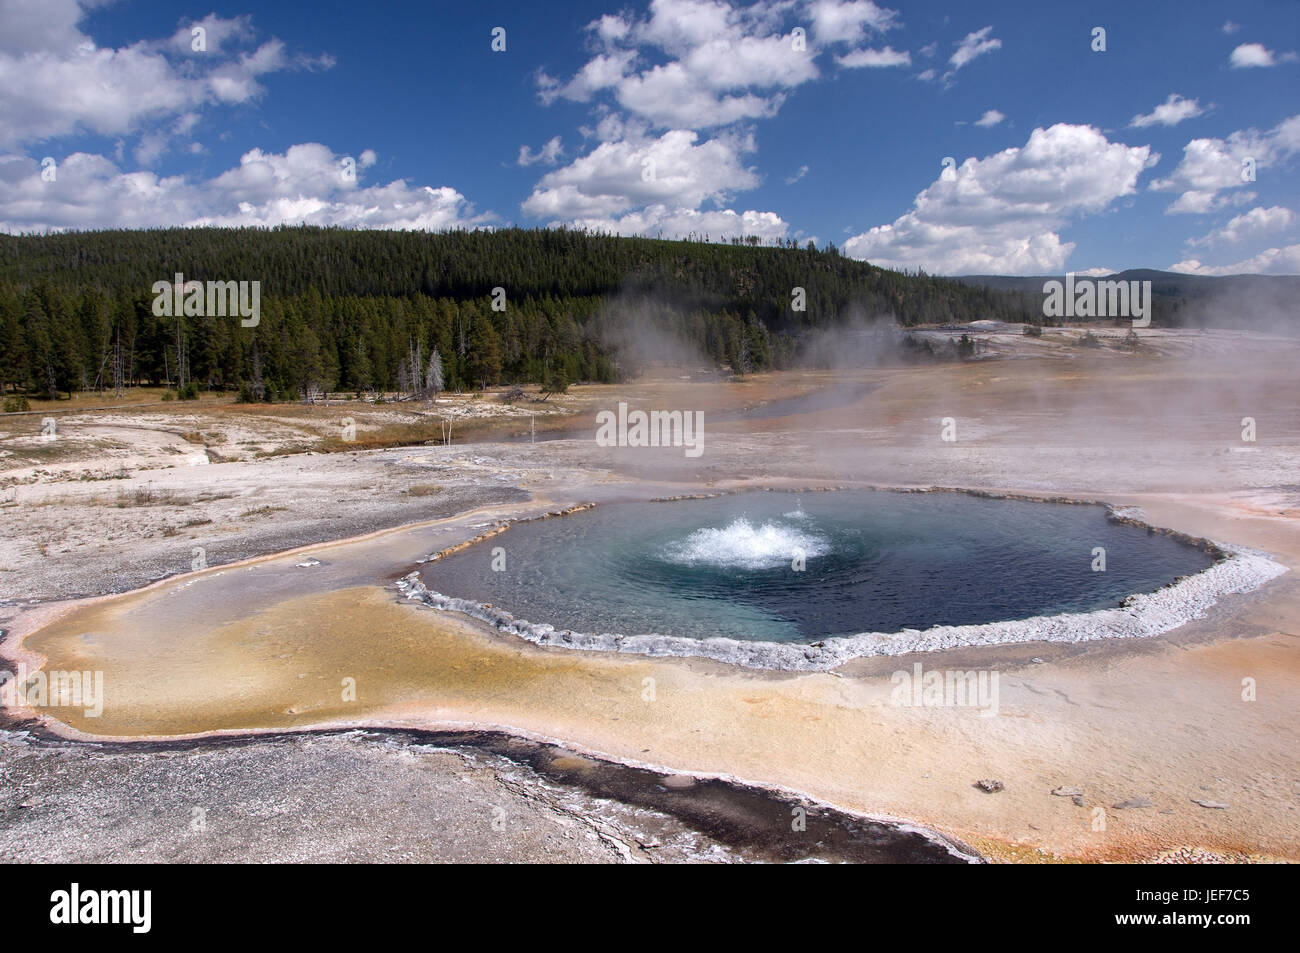 L'admission dans le parc national de Yellowstone, dans l'Utah, aux Etats-Unis, en octobre., Aufnahme im Nationalpark Yellowstone, USA, im Oktober. Banque D'Images